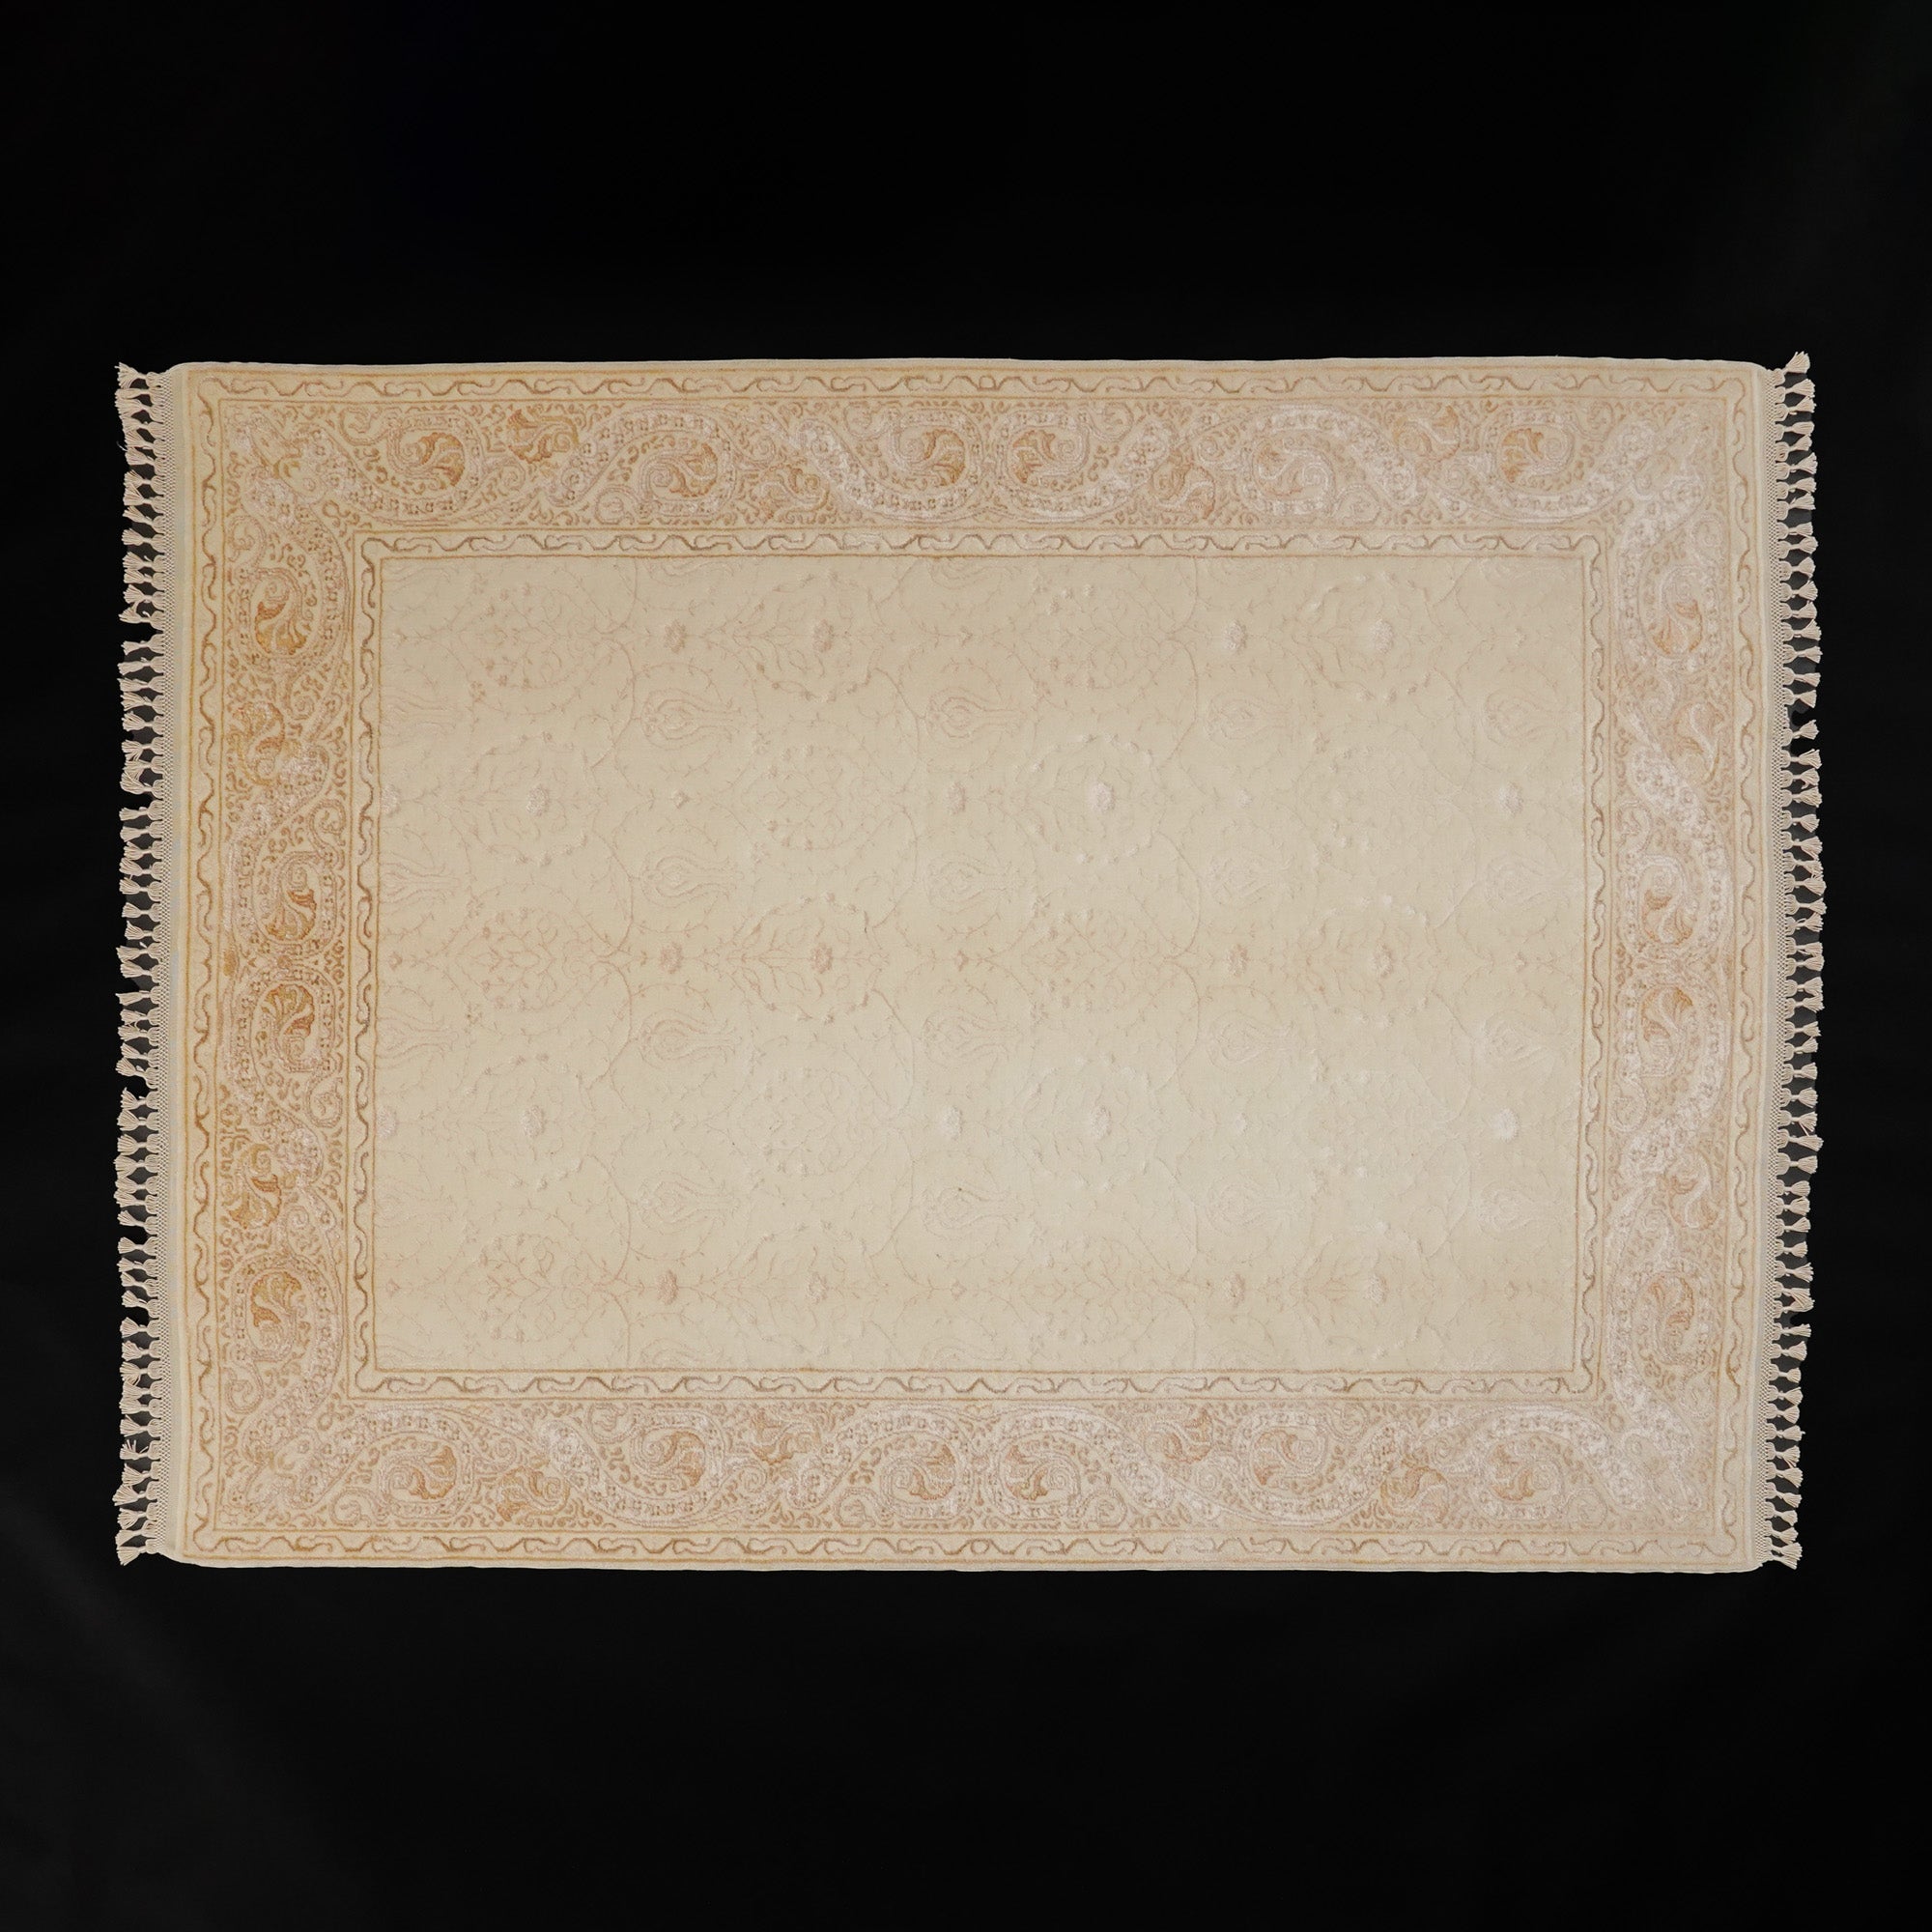 Hanzade Series Silk Hand-Woven Flower Patterned Cream Carpet